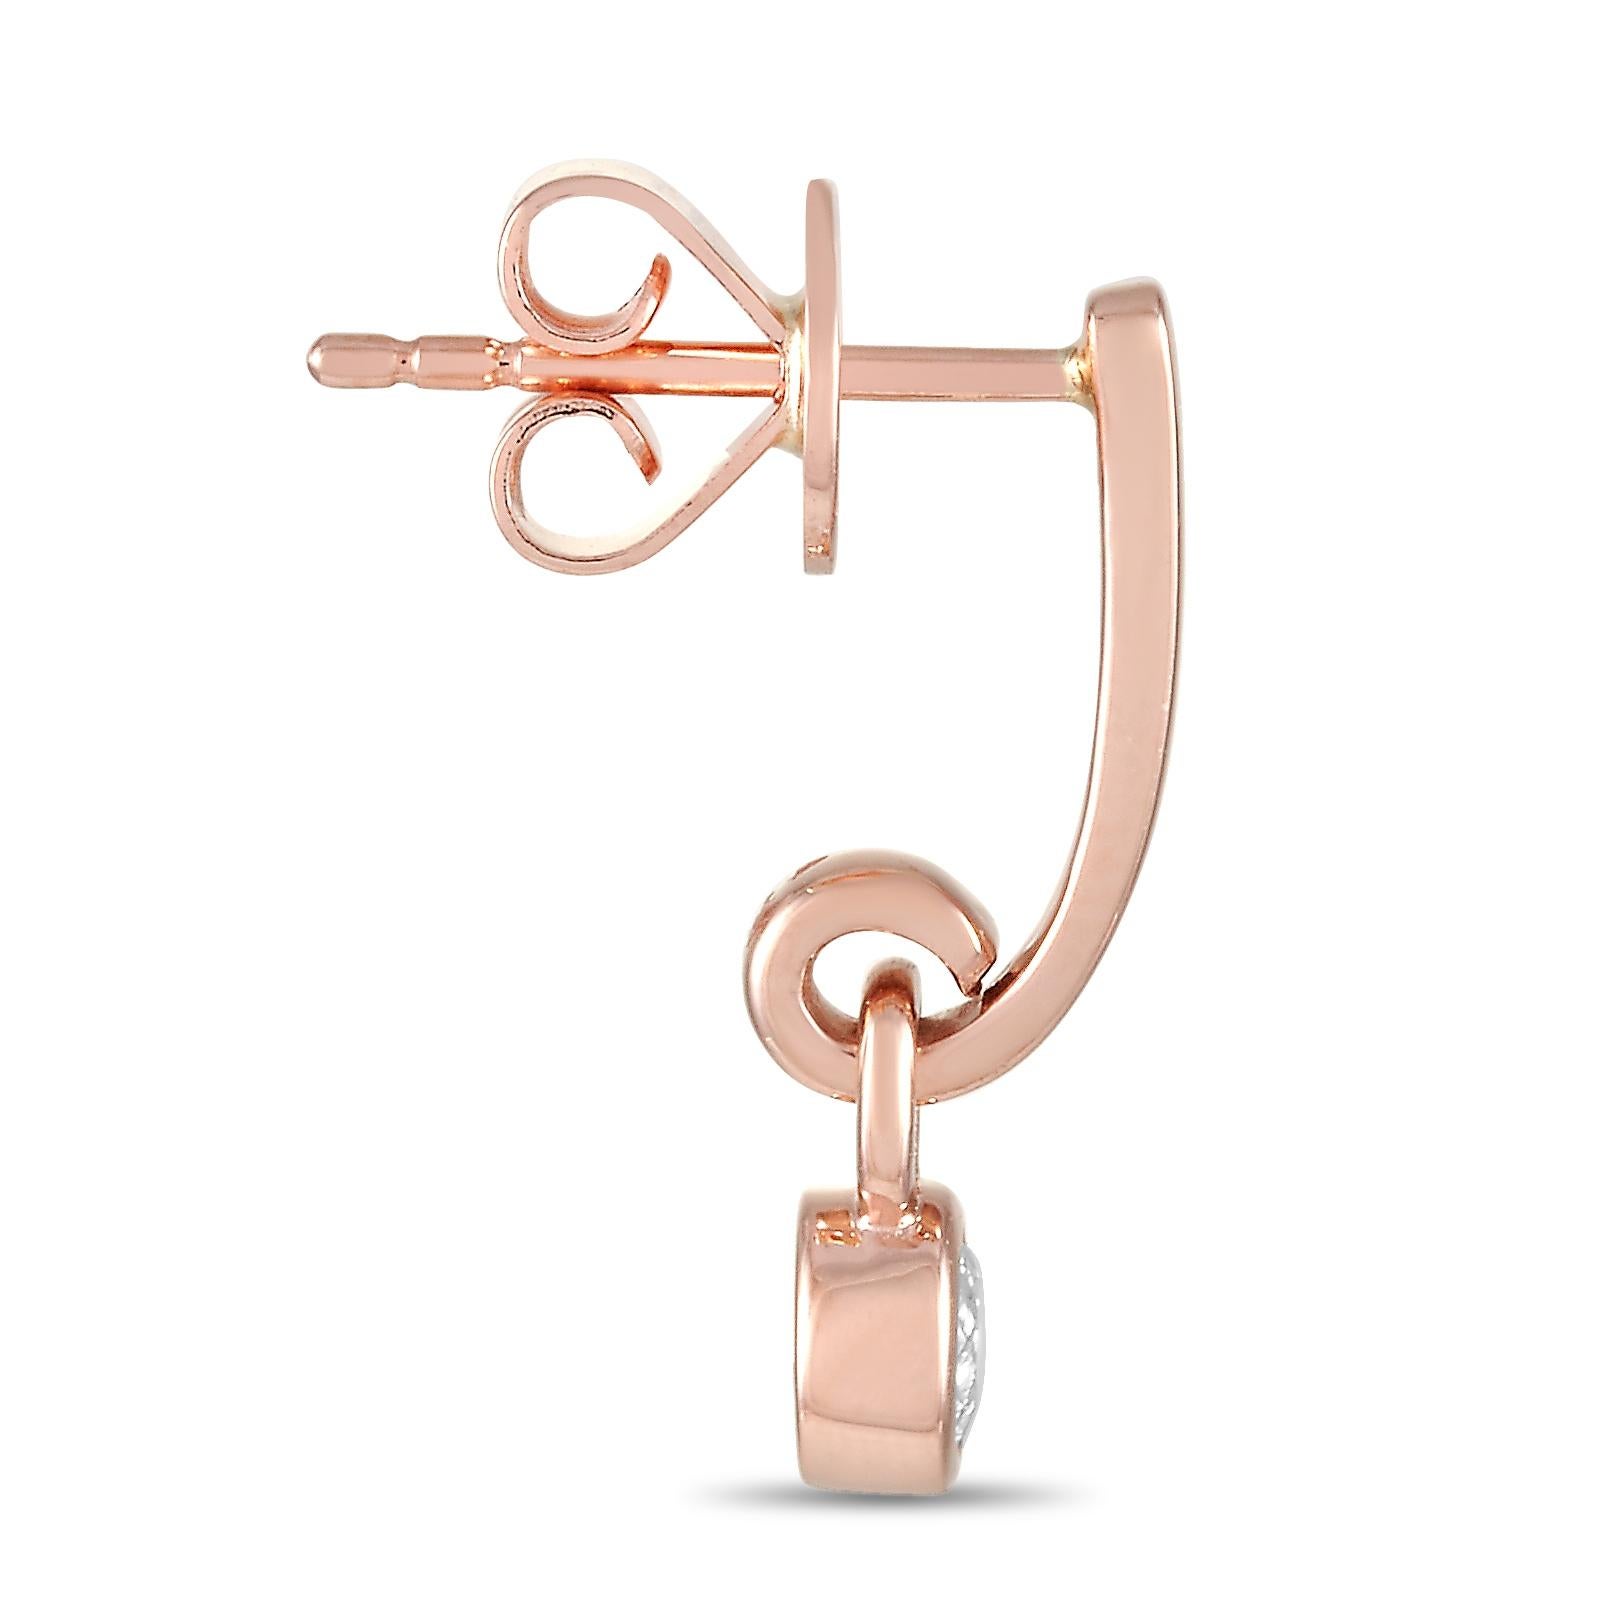 Diese Ohrringe von LB Exclusive sind aus 14-karätigem Roségold gefertigt und mit Diamanten von 0,29 Karat verziert. Die Ohrringe messen 0,63